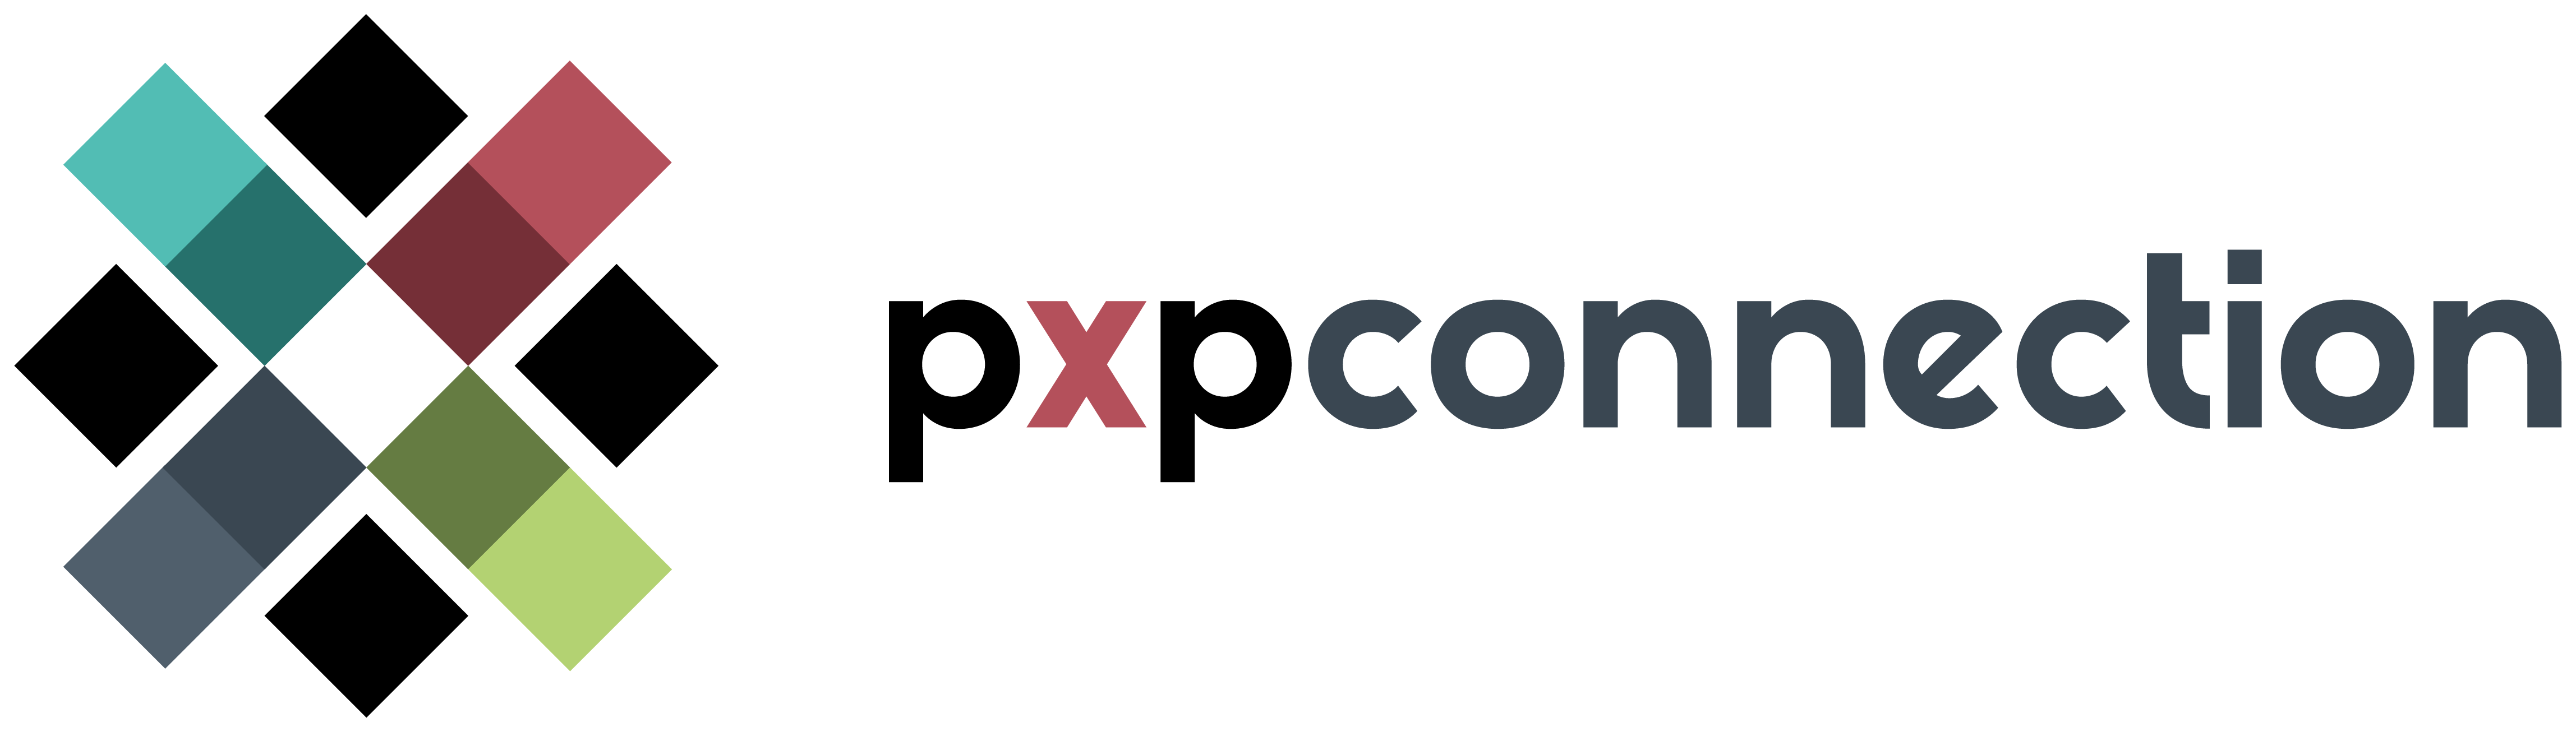 Logotipo da PXP Connection, uma agência de marketing e comunicação full service.